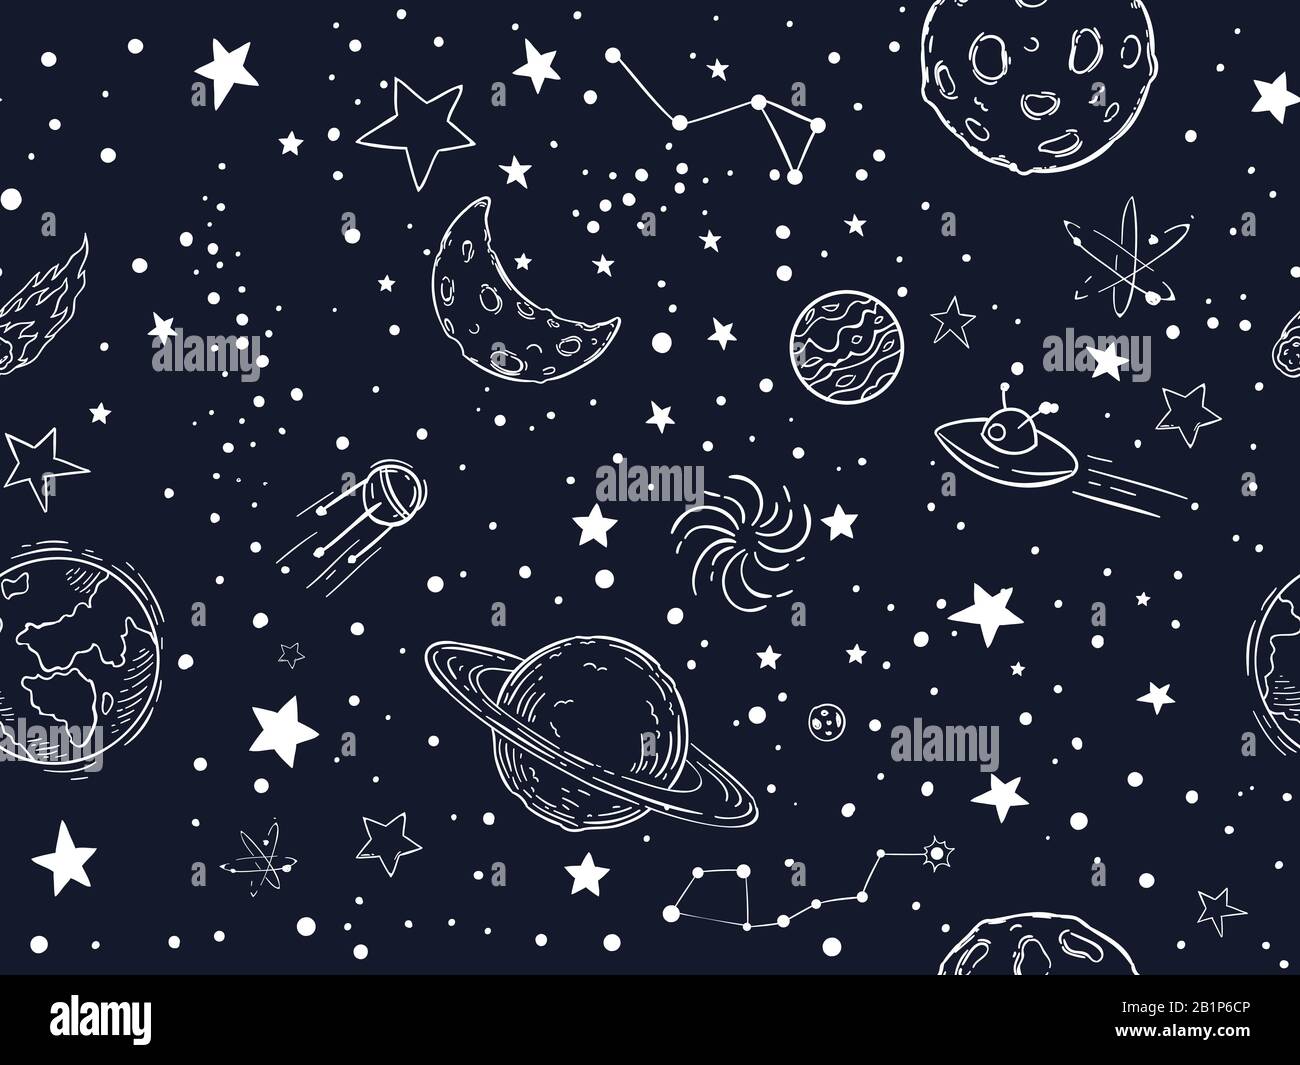 Il modello delle stelle del cielo notturno è perfetto. Disegno di luna, pianeti spaziali e disegno a mano stella vettore illustrazione. Spazio esterno simboli texture decorativa. Cosmico Illustrazione Vettoriale